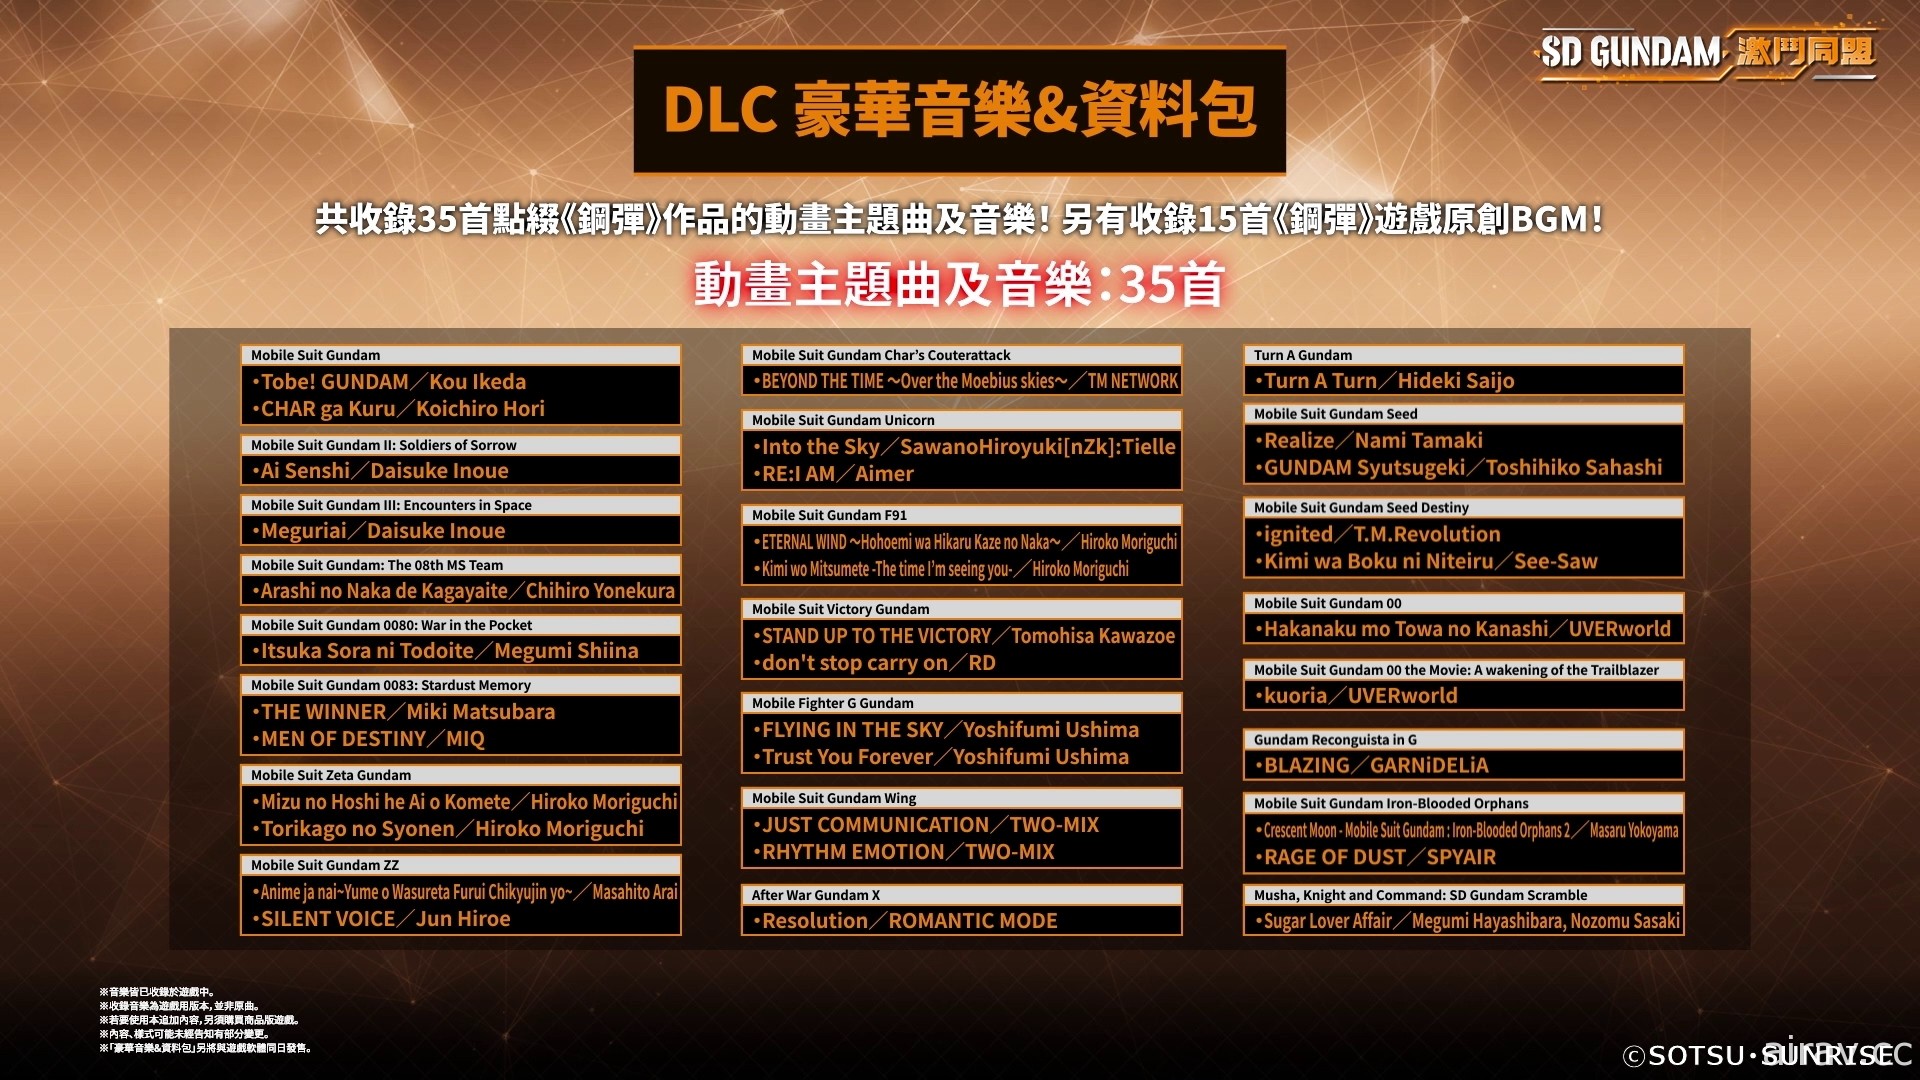 《SD 钢弹 激斗同盟》确定 8/25 上市 同步公开各版本特典及 DLC 内容